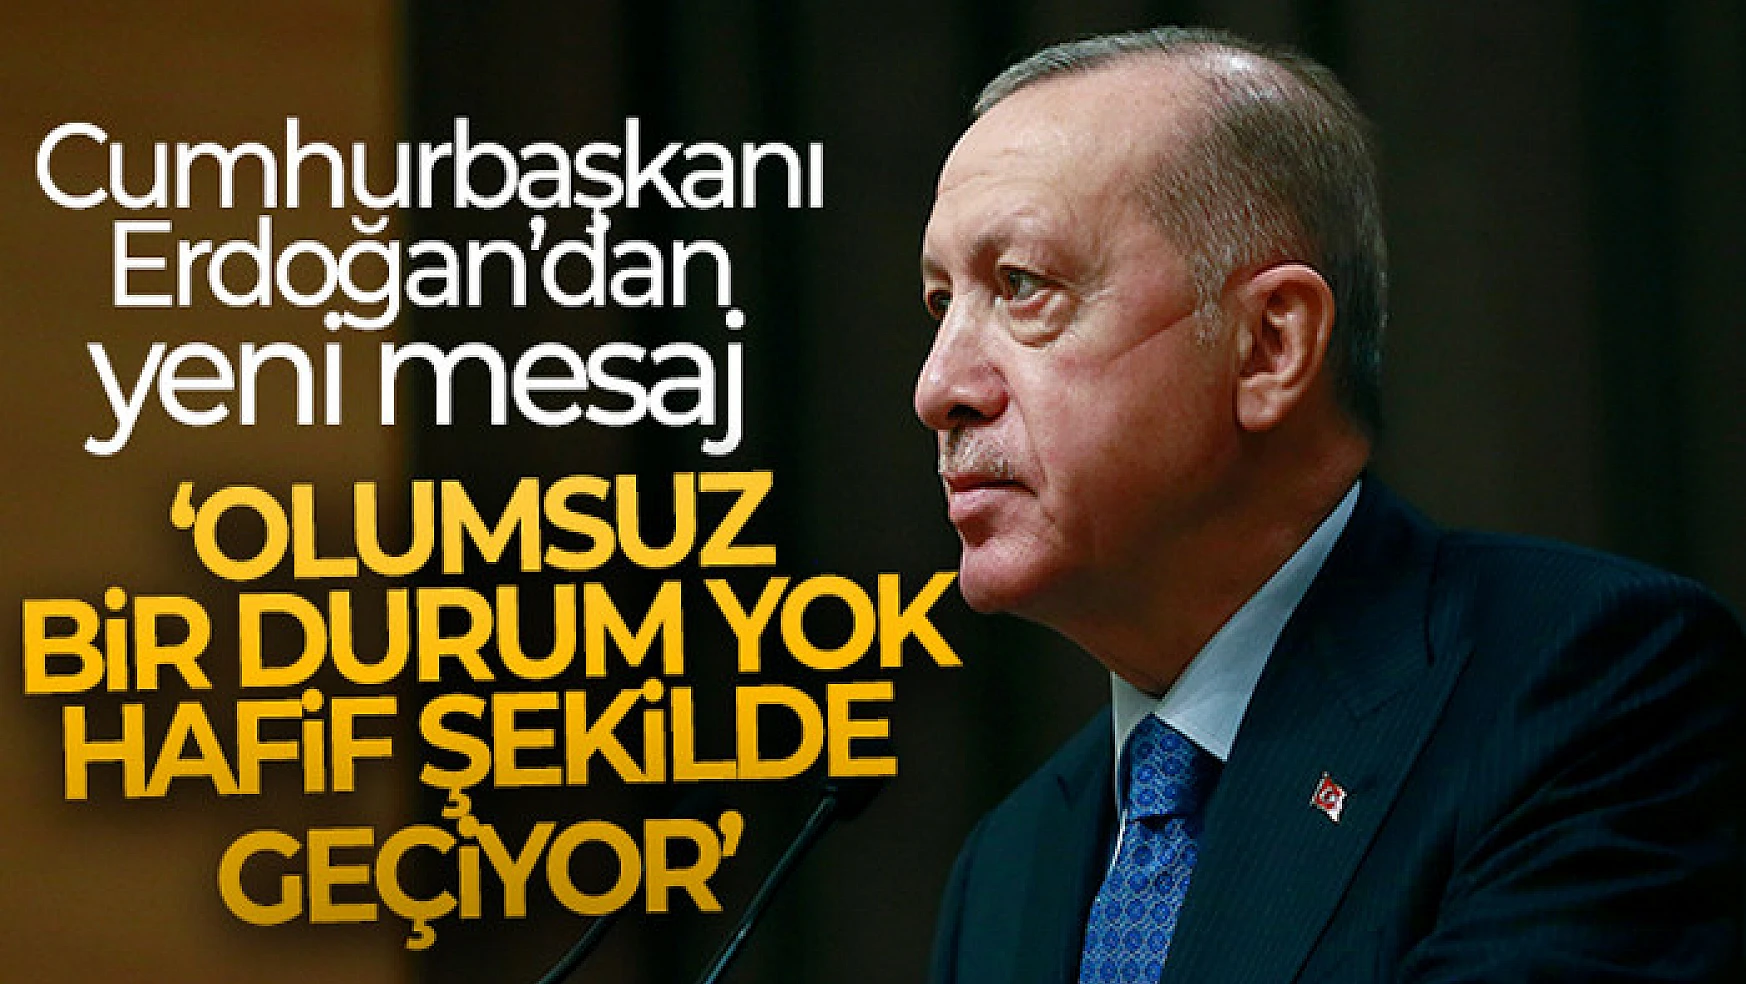 Cumhurbaşkanı Erdoğan: Olumsuz bir durum yok, hafif şekilde geçiyor